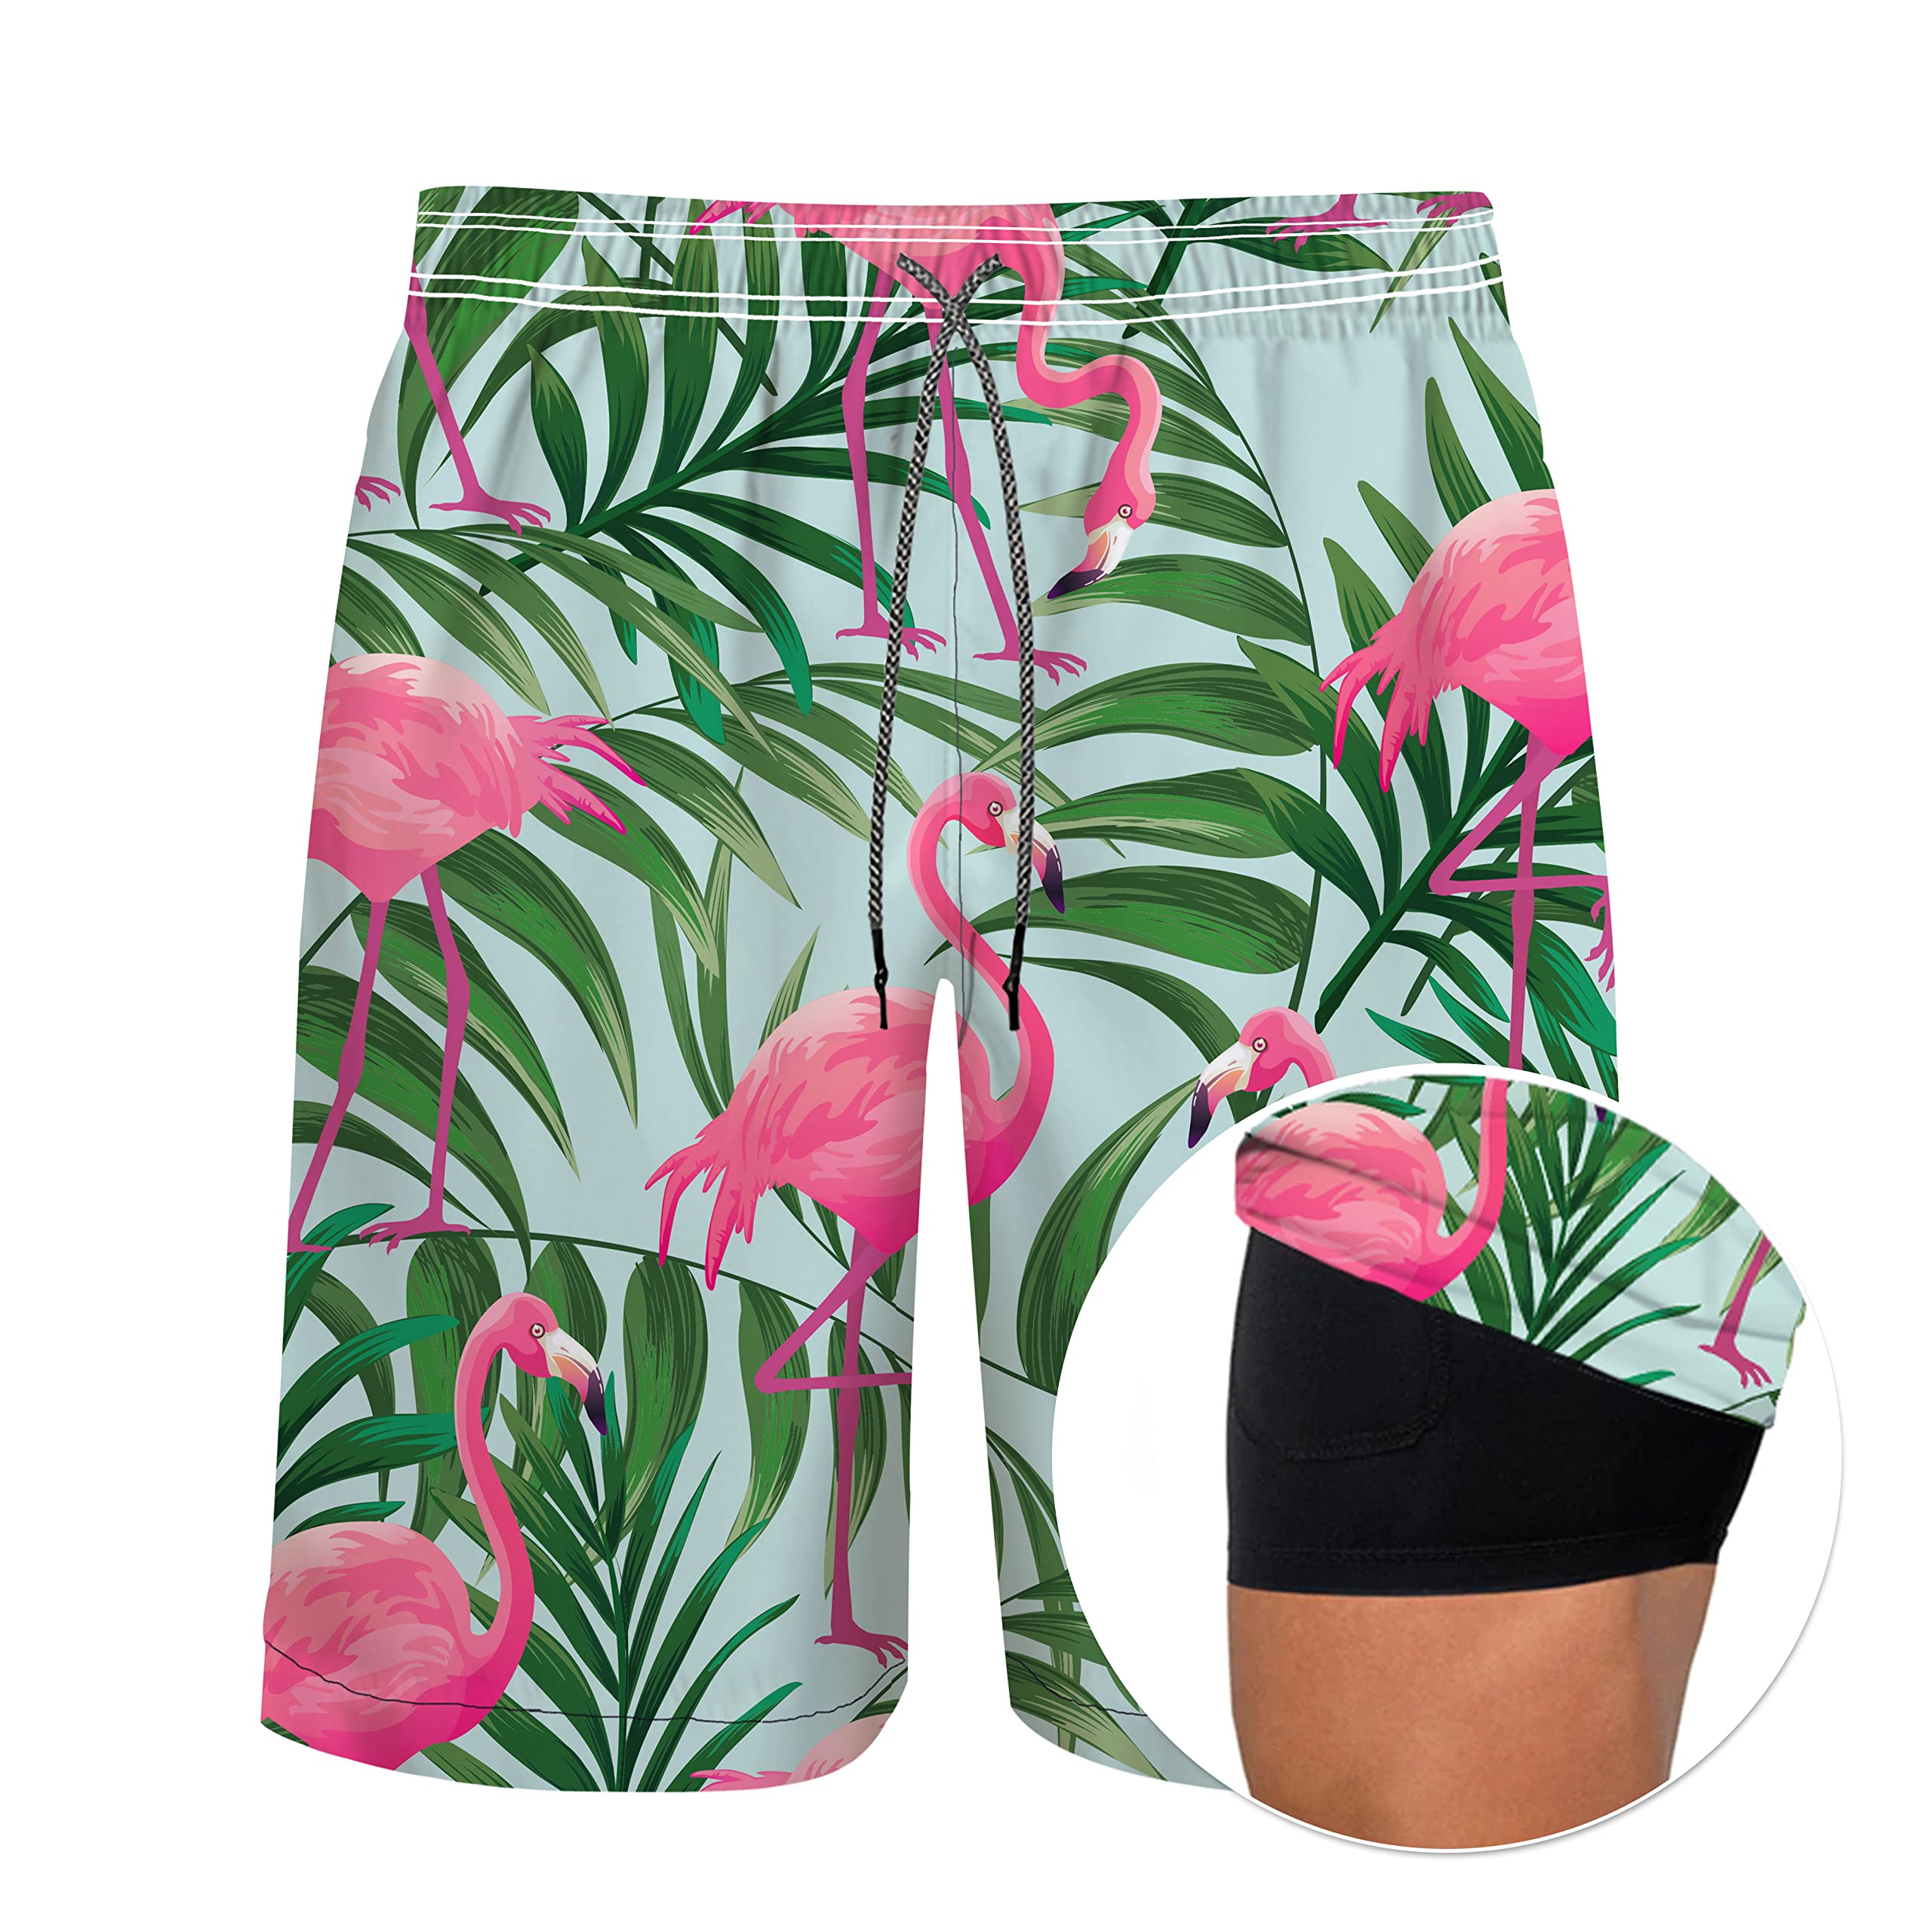 Men's 9" Inseam Swim Trunks With Compression Liner Quick Dry Swim Bathing Suit - Flamingo